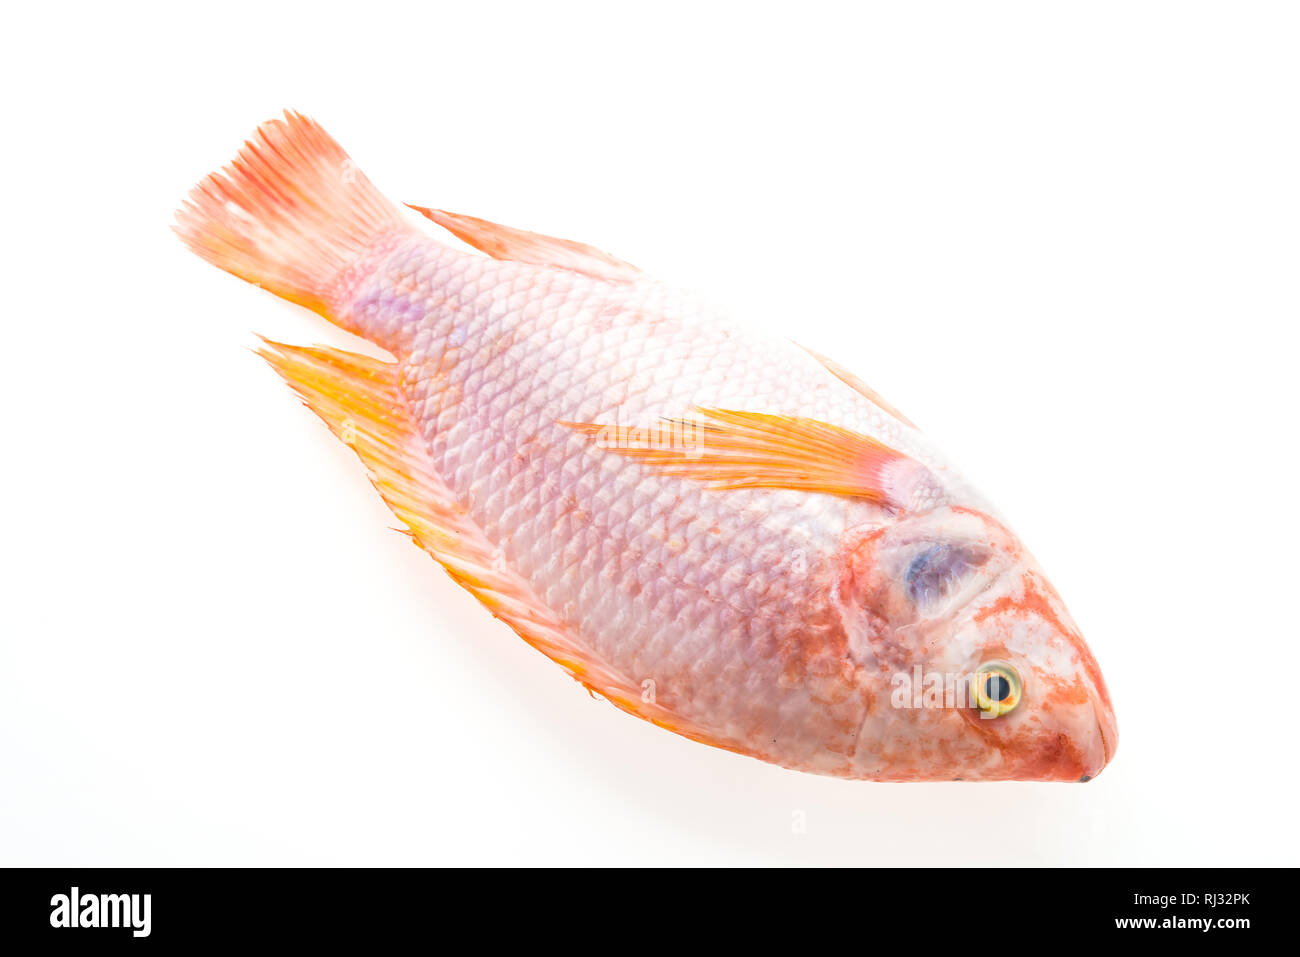 Raw tilapia fresh fish isolated on white background Stock Photo